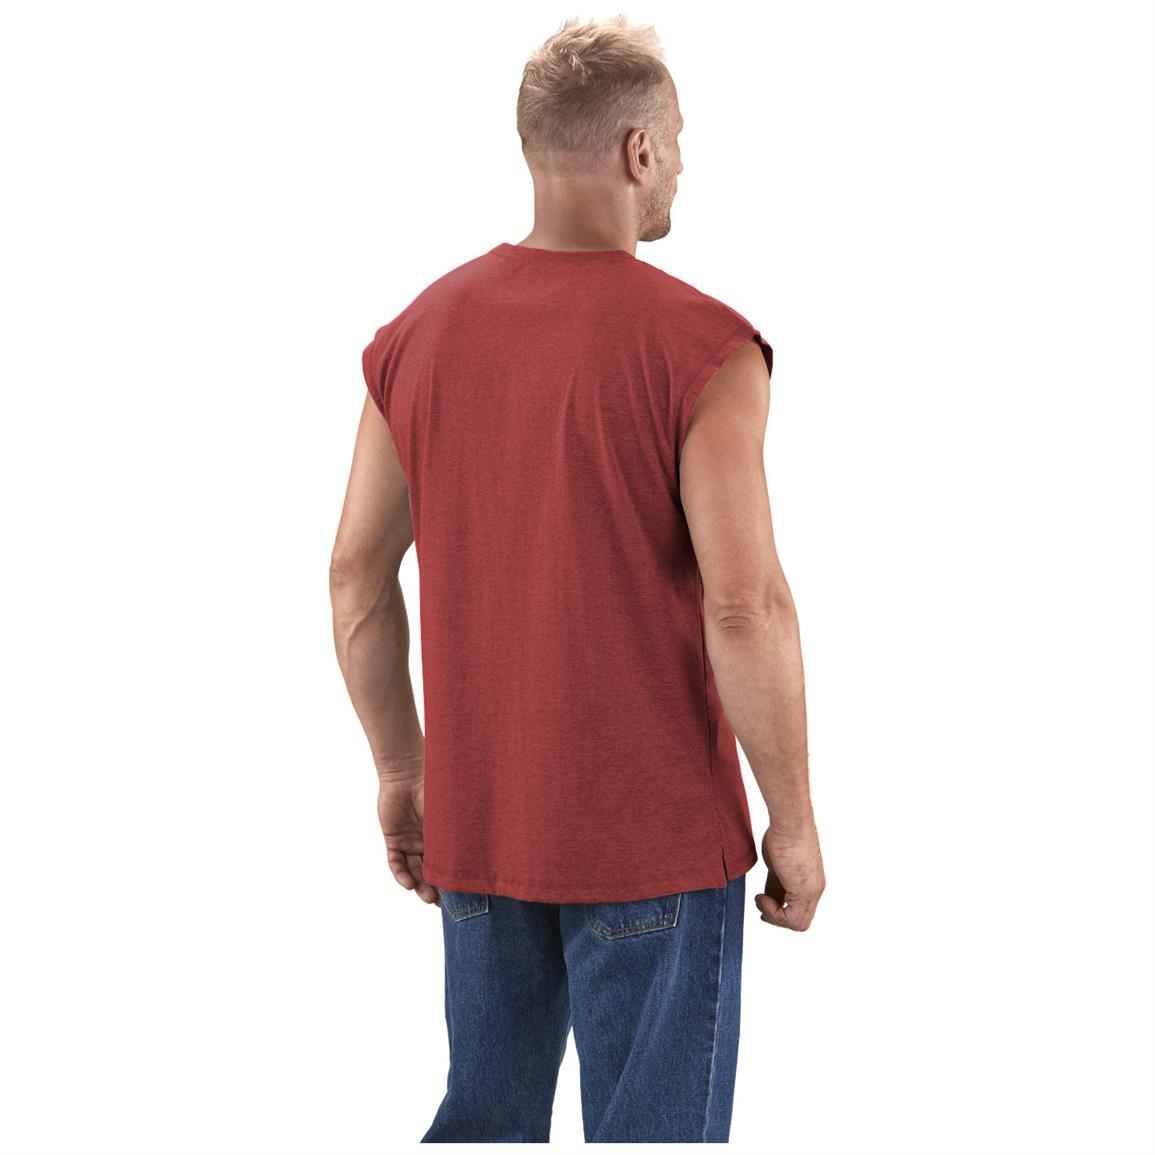 Download Guide Gear Men's Work Sleeveless Pocket T-Shirt - 621479 ...